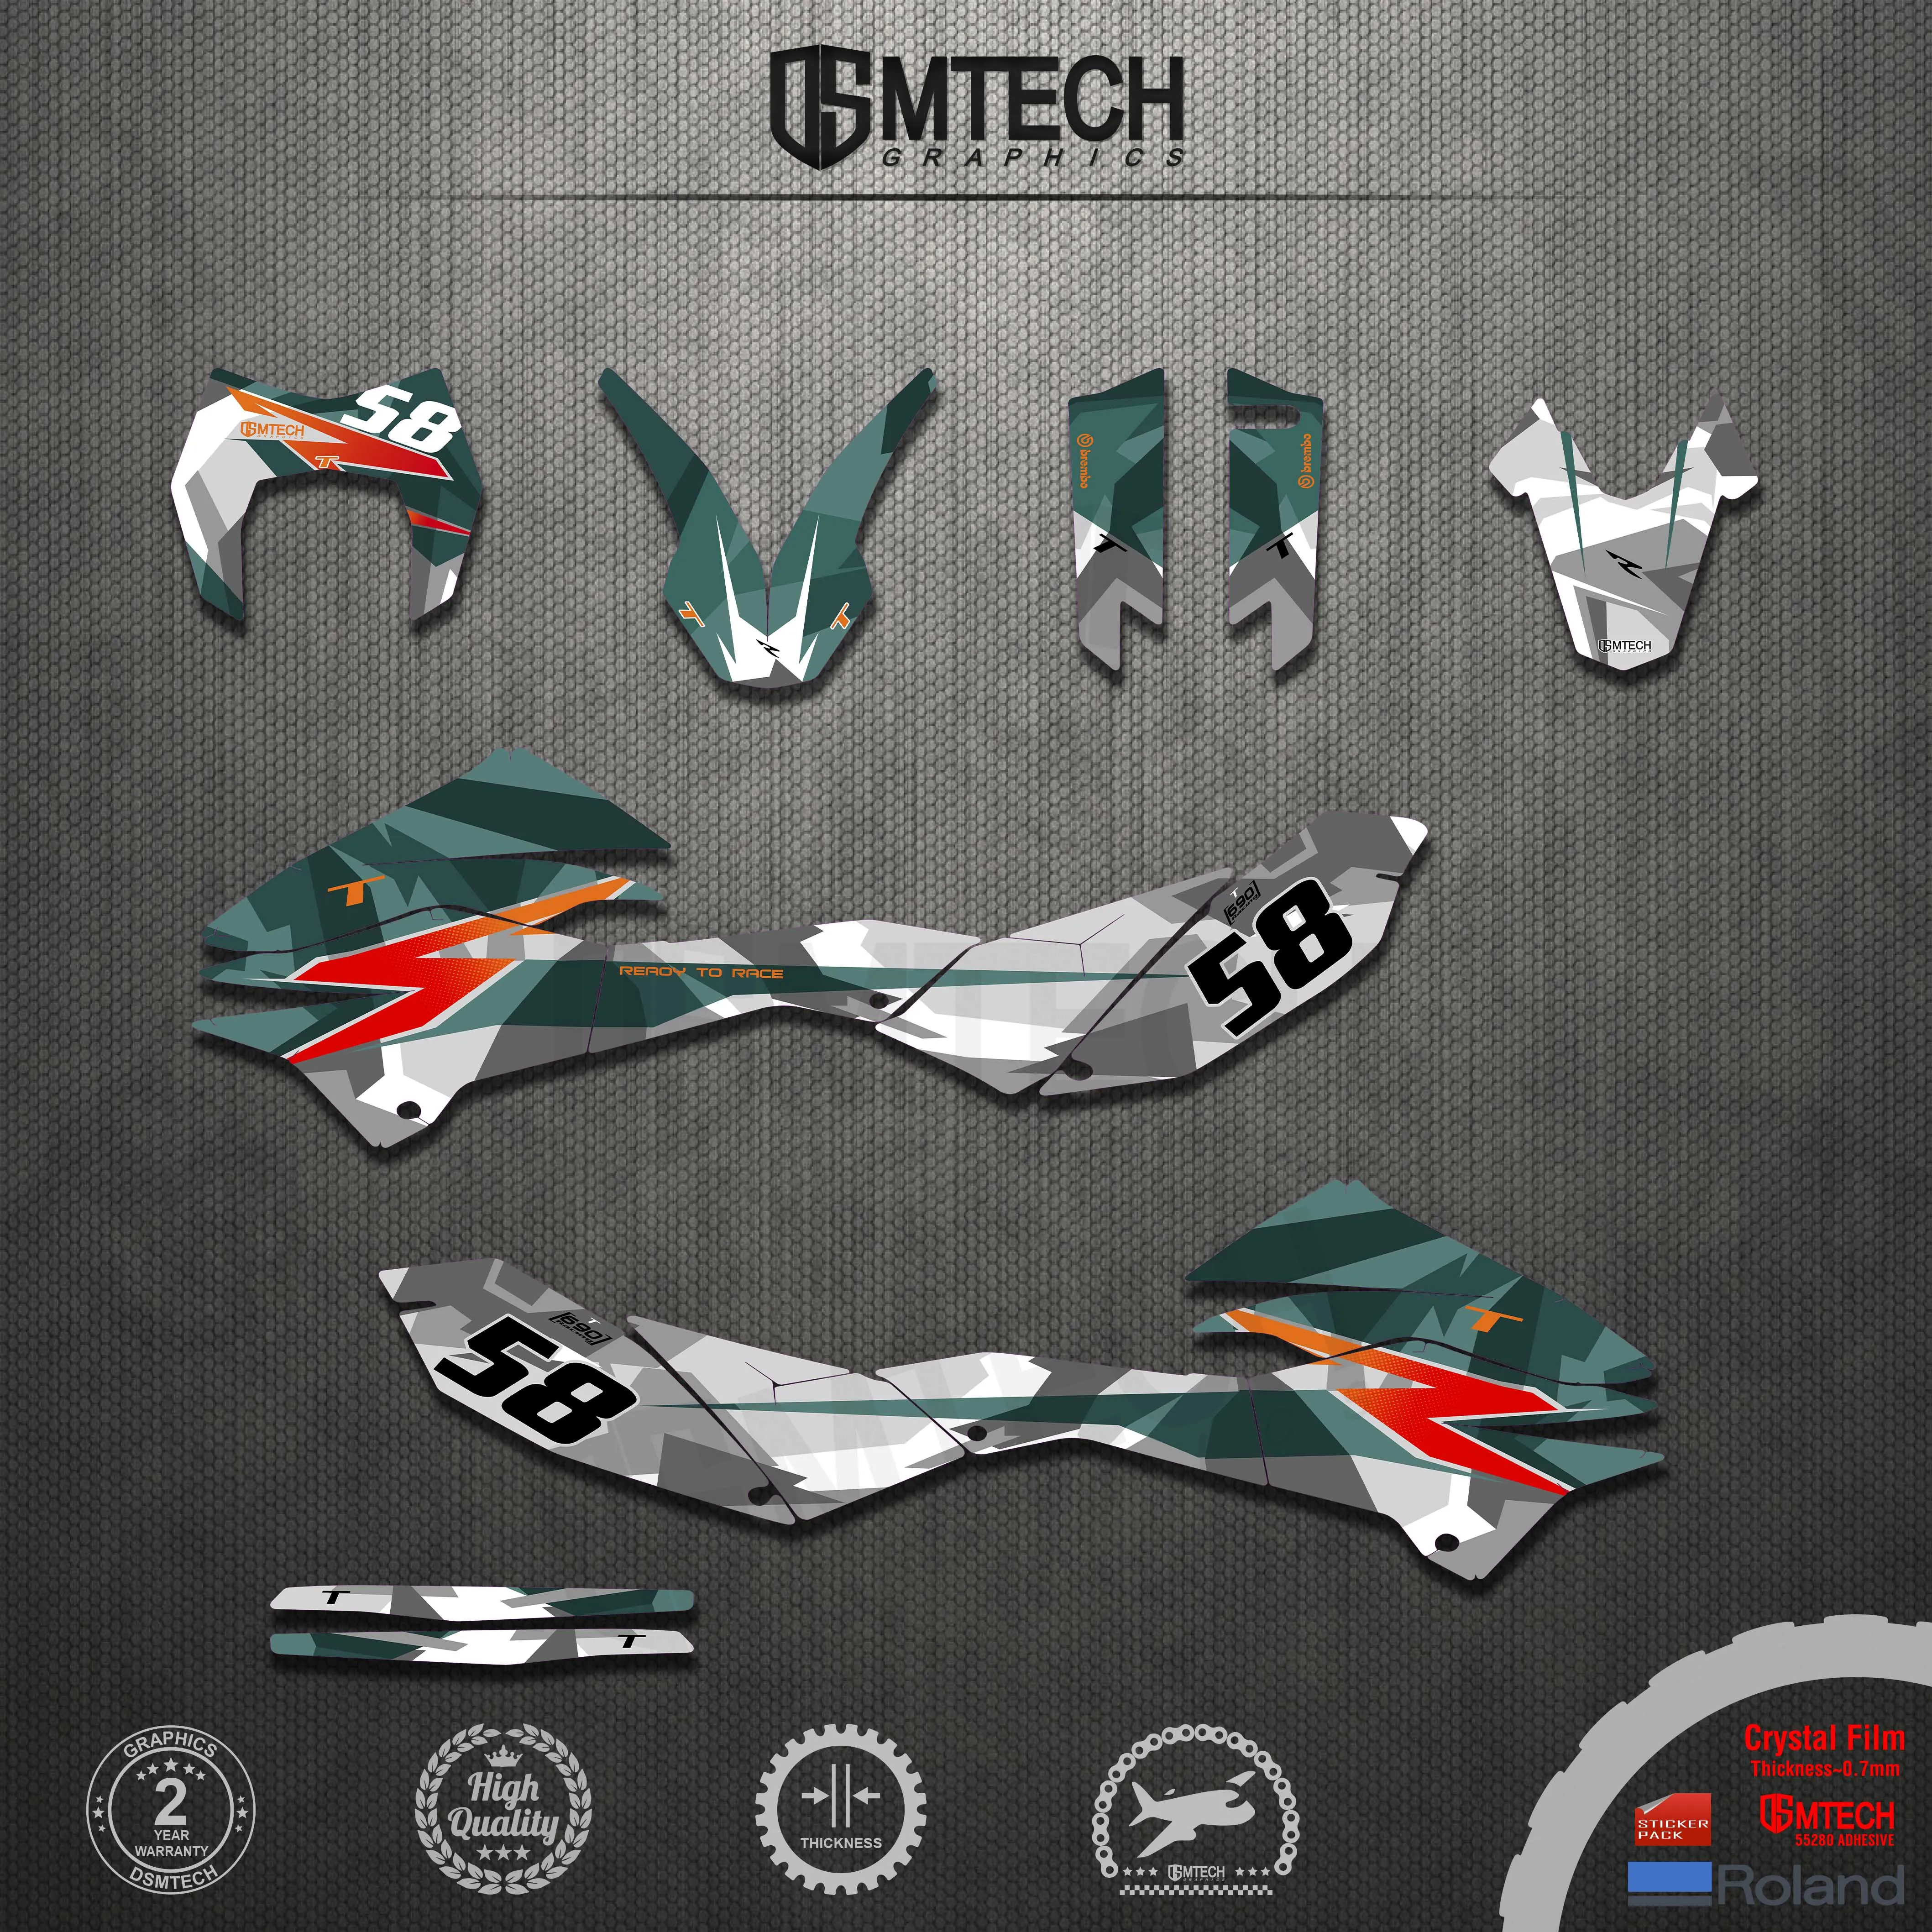 DSMTECH SMCR 690 2012-18 Team Background Decals for KTM SMC-R SMCR 690 2012 2013 2014 2015 2016 2017 2018 Graphics Stickers Kit